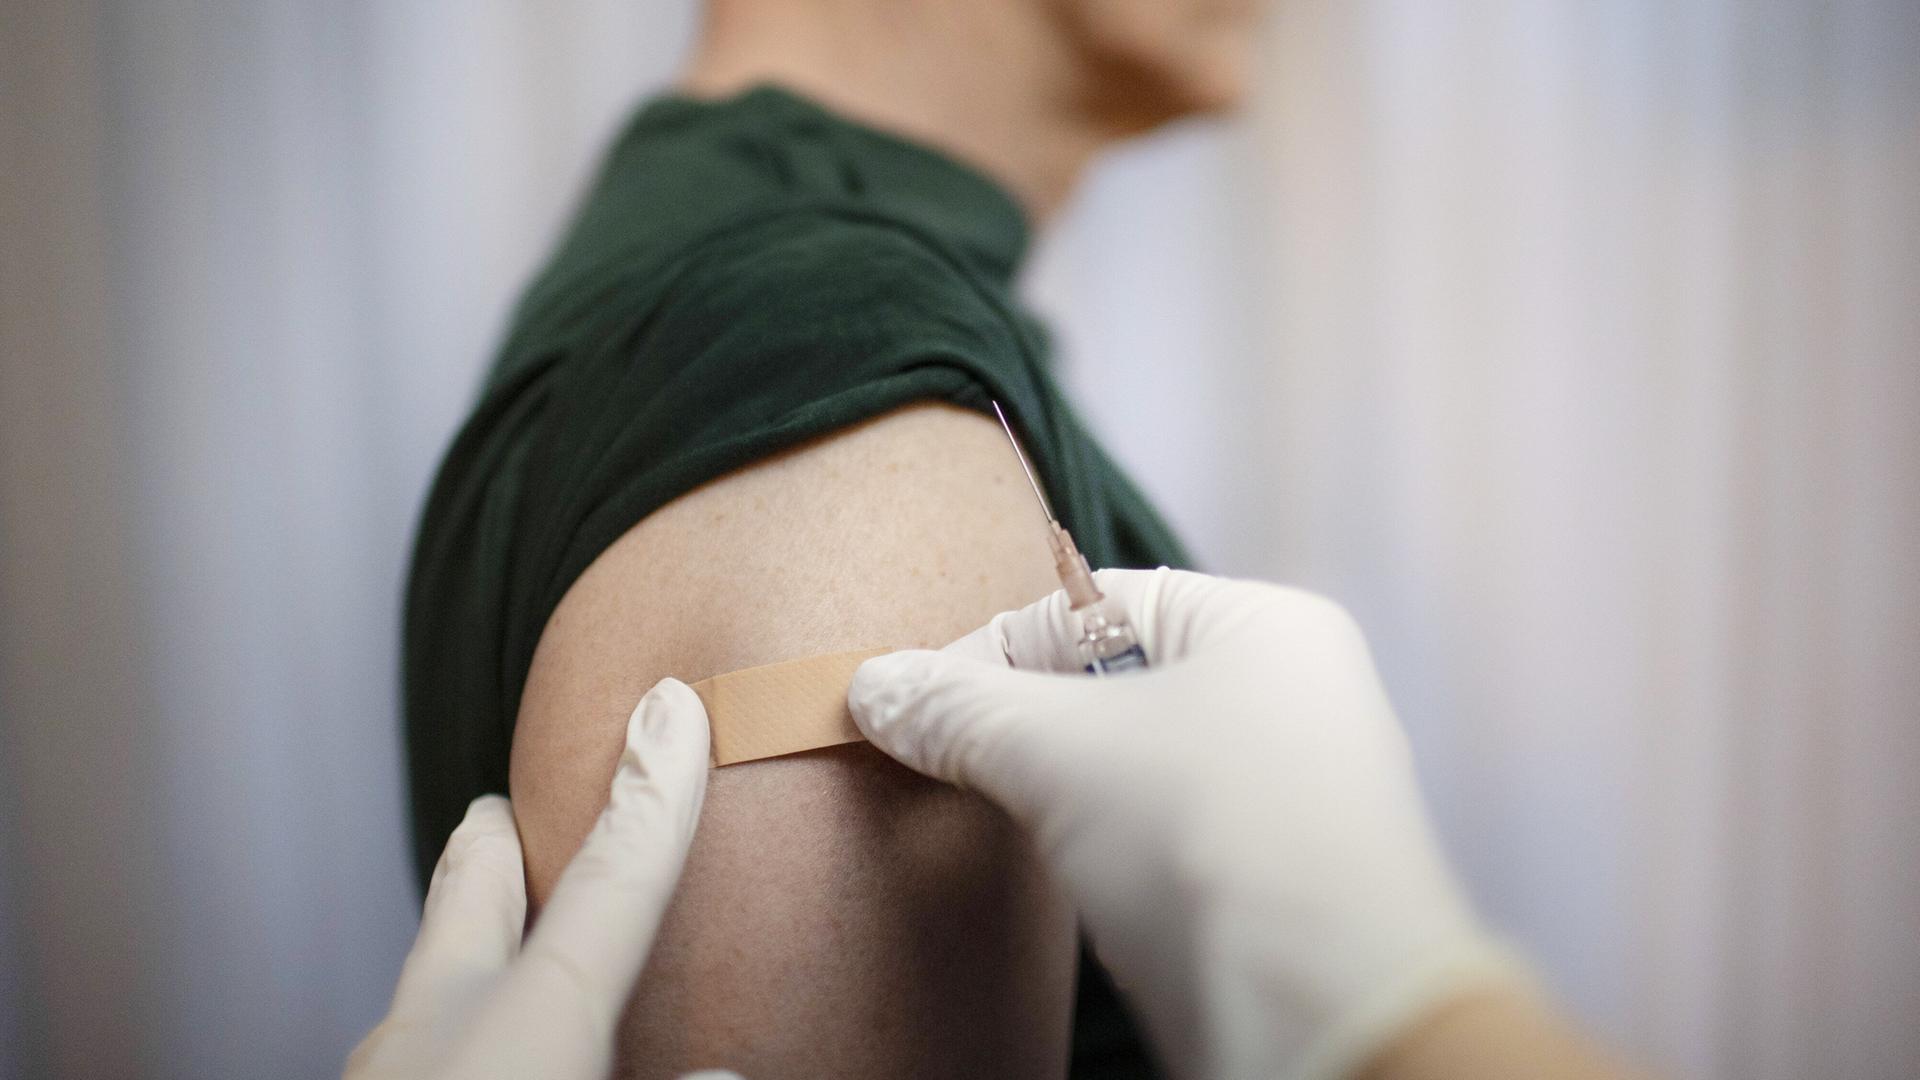 Impfung. Ein Arzt klebt ein Pflaster auf die Einstichstelle am Arm.